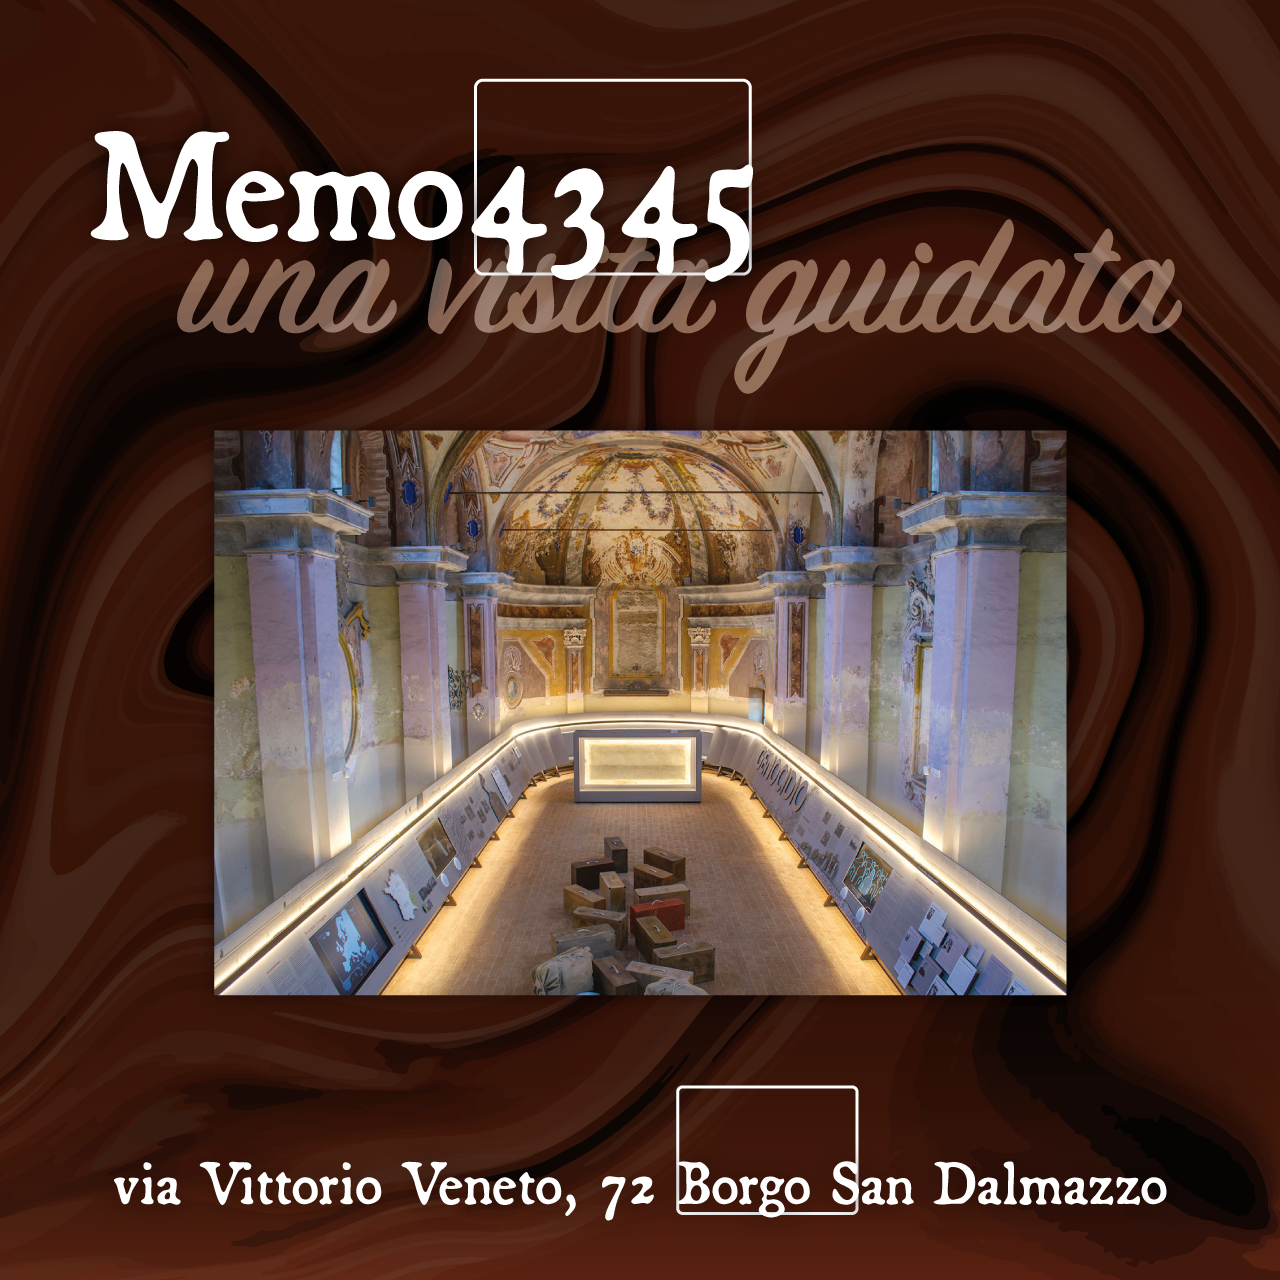 Grafica dedicata alle visite guidate a MEMO4345 durante i due giorni di Un Borgo di Cioccolato, che si terrà a Borgo San Dalmazzo l'11 e il 12 marzo 2023